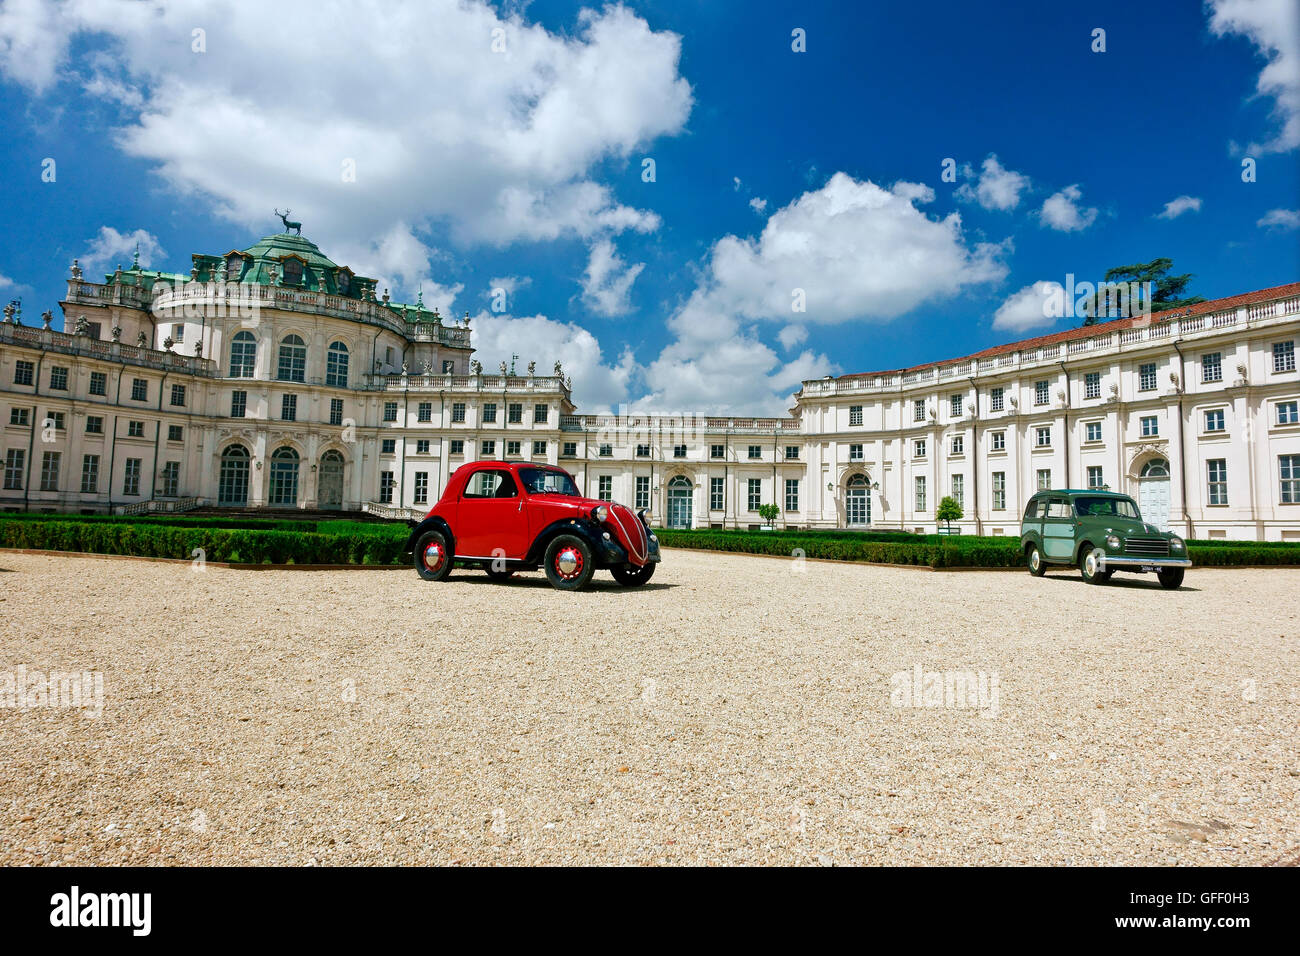 Fiat 500 topolino rouge, Fiat Topolino giardinetta location exposée au Palais de Chasse de Stupinigi. Résidences de la Maison Royale de Savoie, province de Turin Banque D'Images